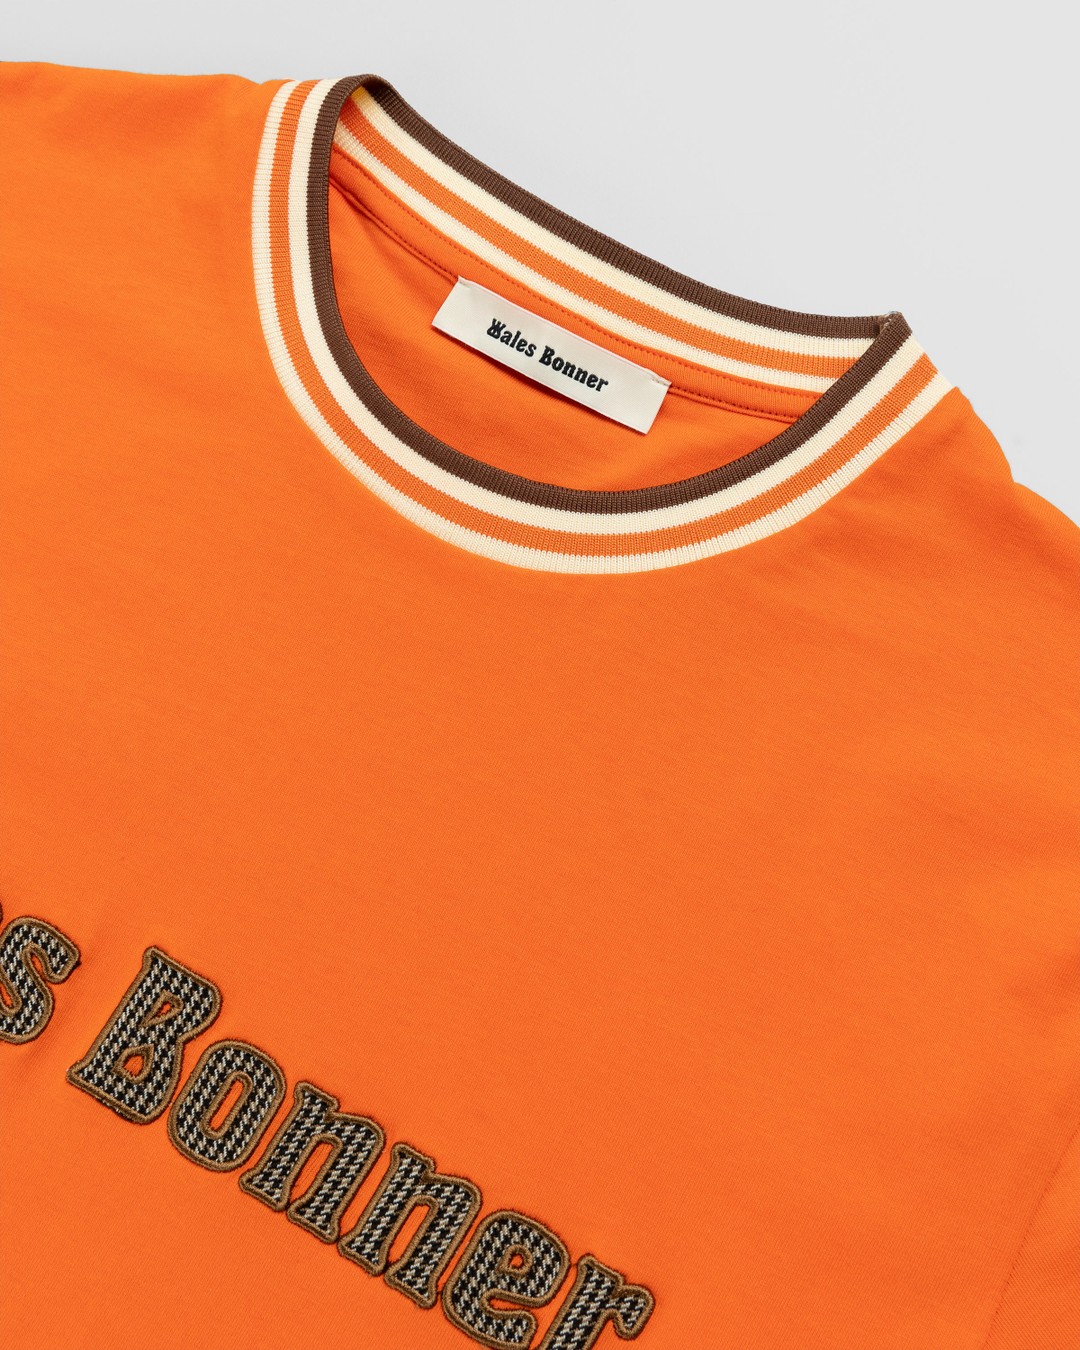 Wales Bonner – Original T-Shirt Orange - T-shirts - Orange - Image 4